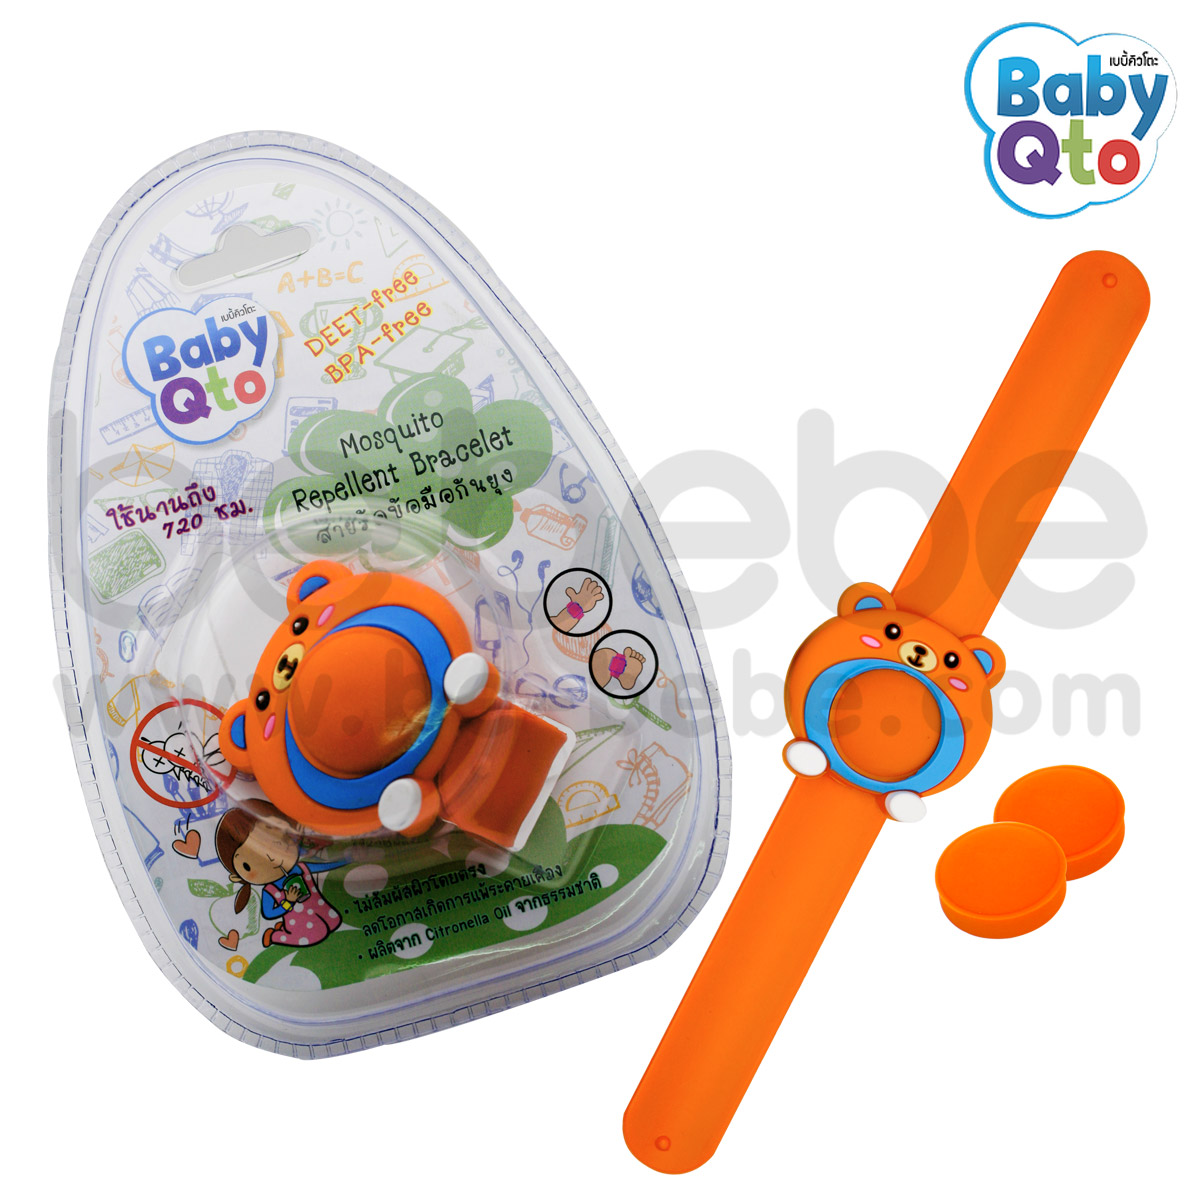 BabyQto : สายรัดข้อมือกันยุง / ลายหมี (ส้ม)